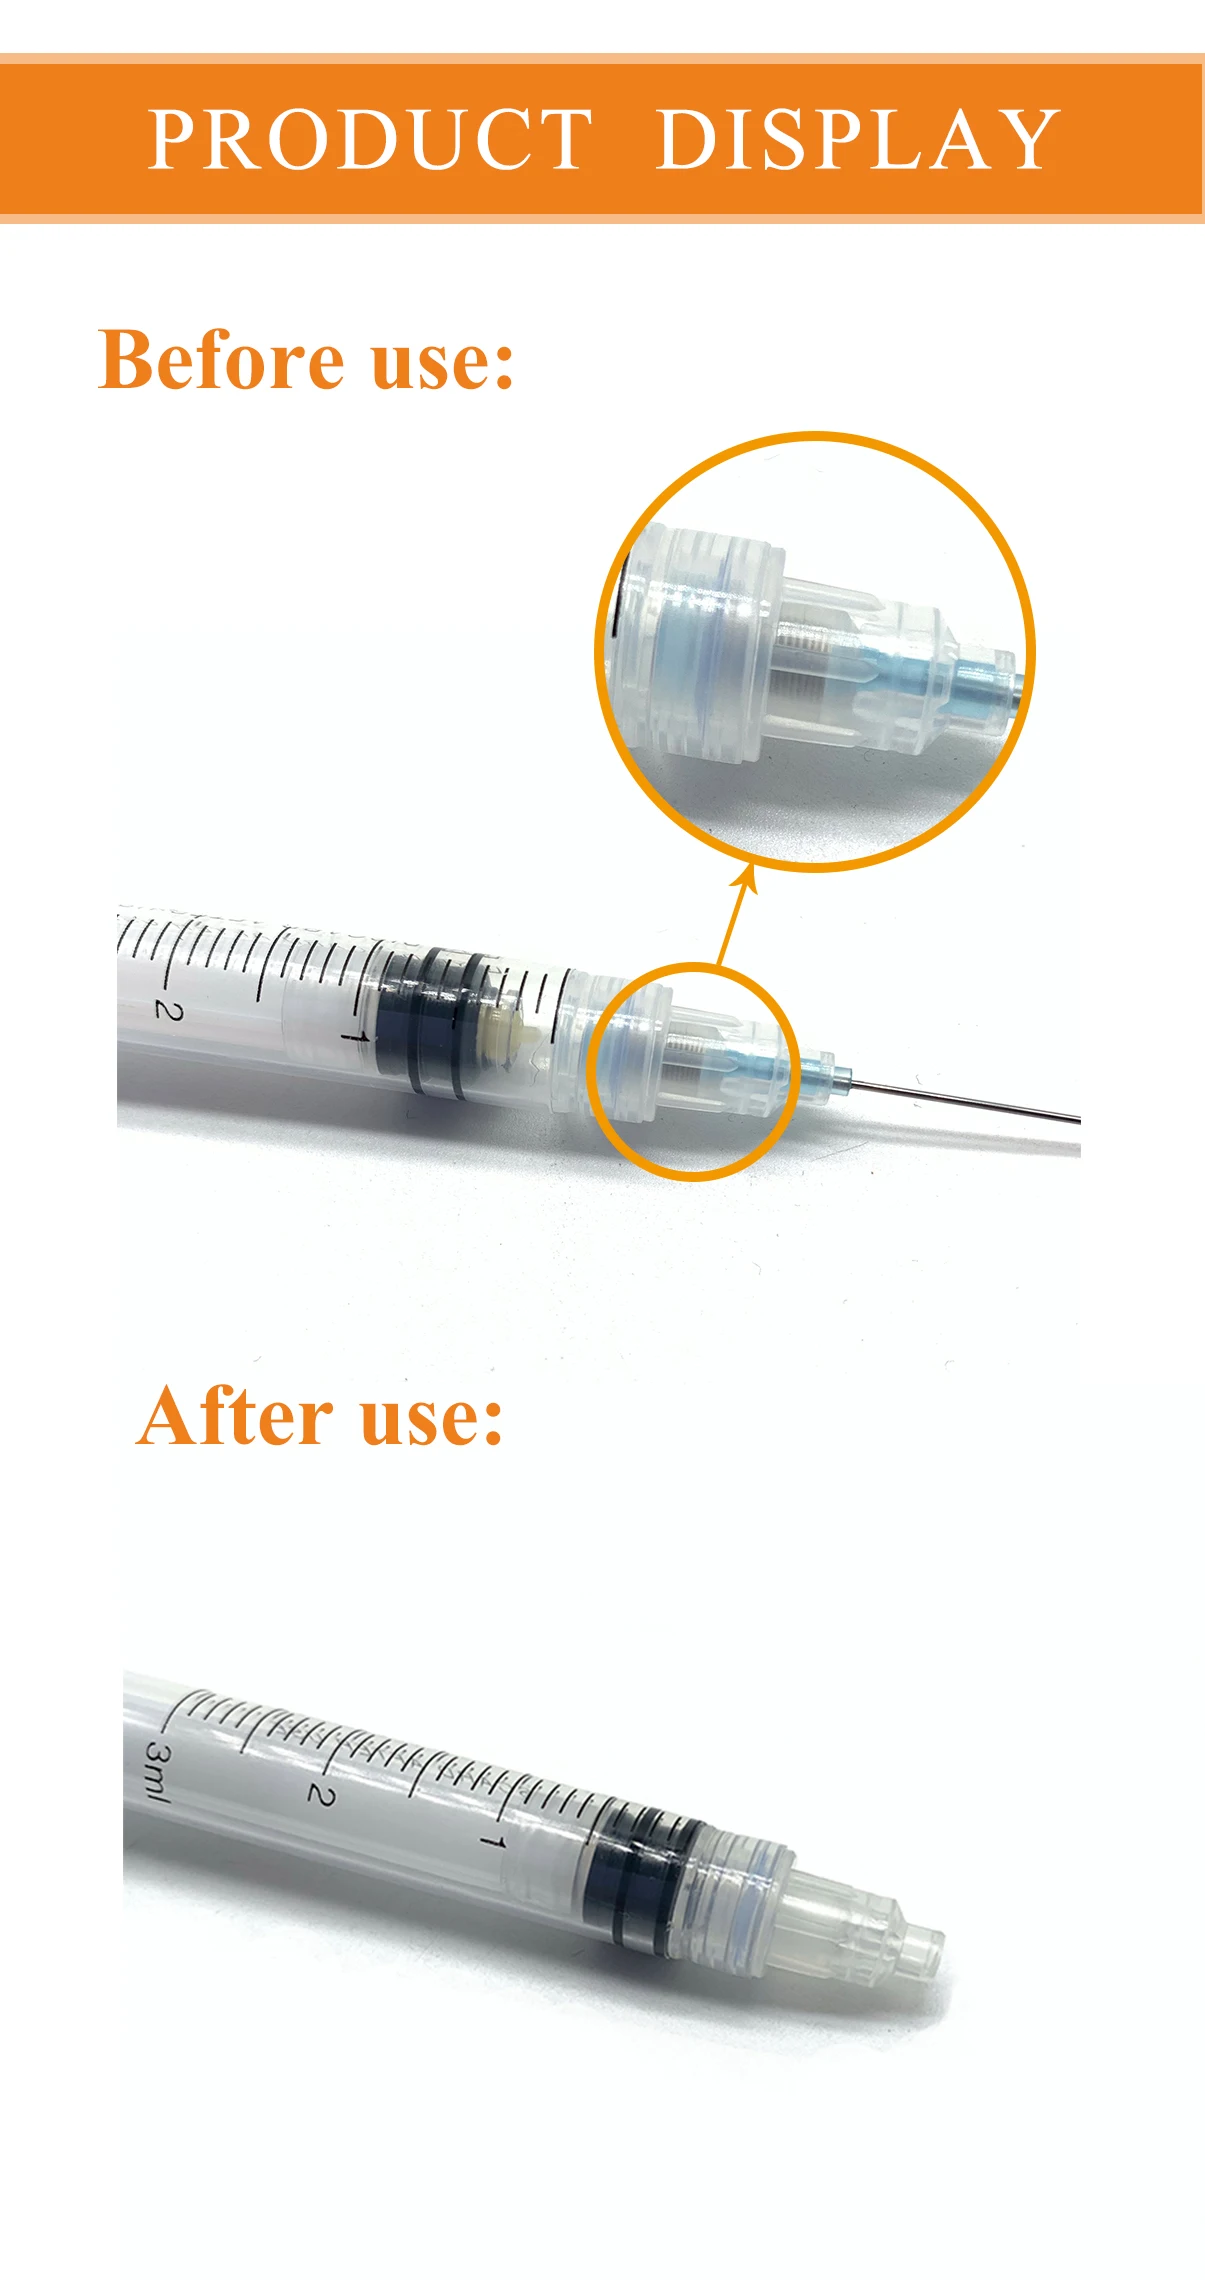 1-10ml Disposable AD syringe,auto disable syringe,safety syringe with needle